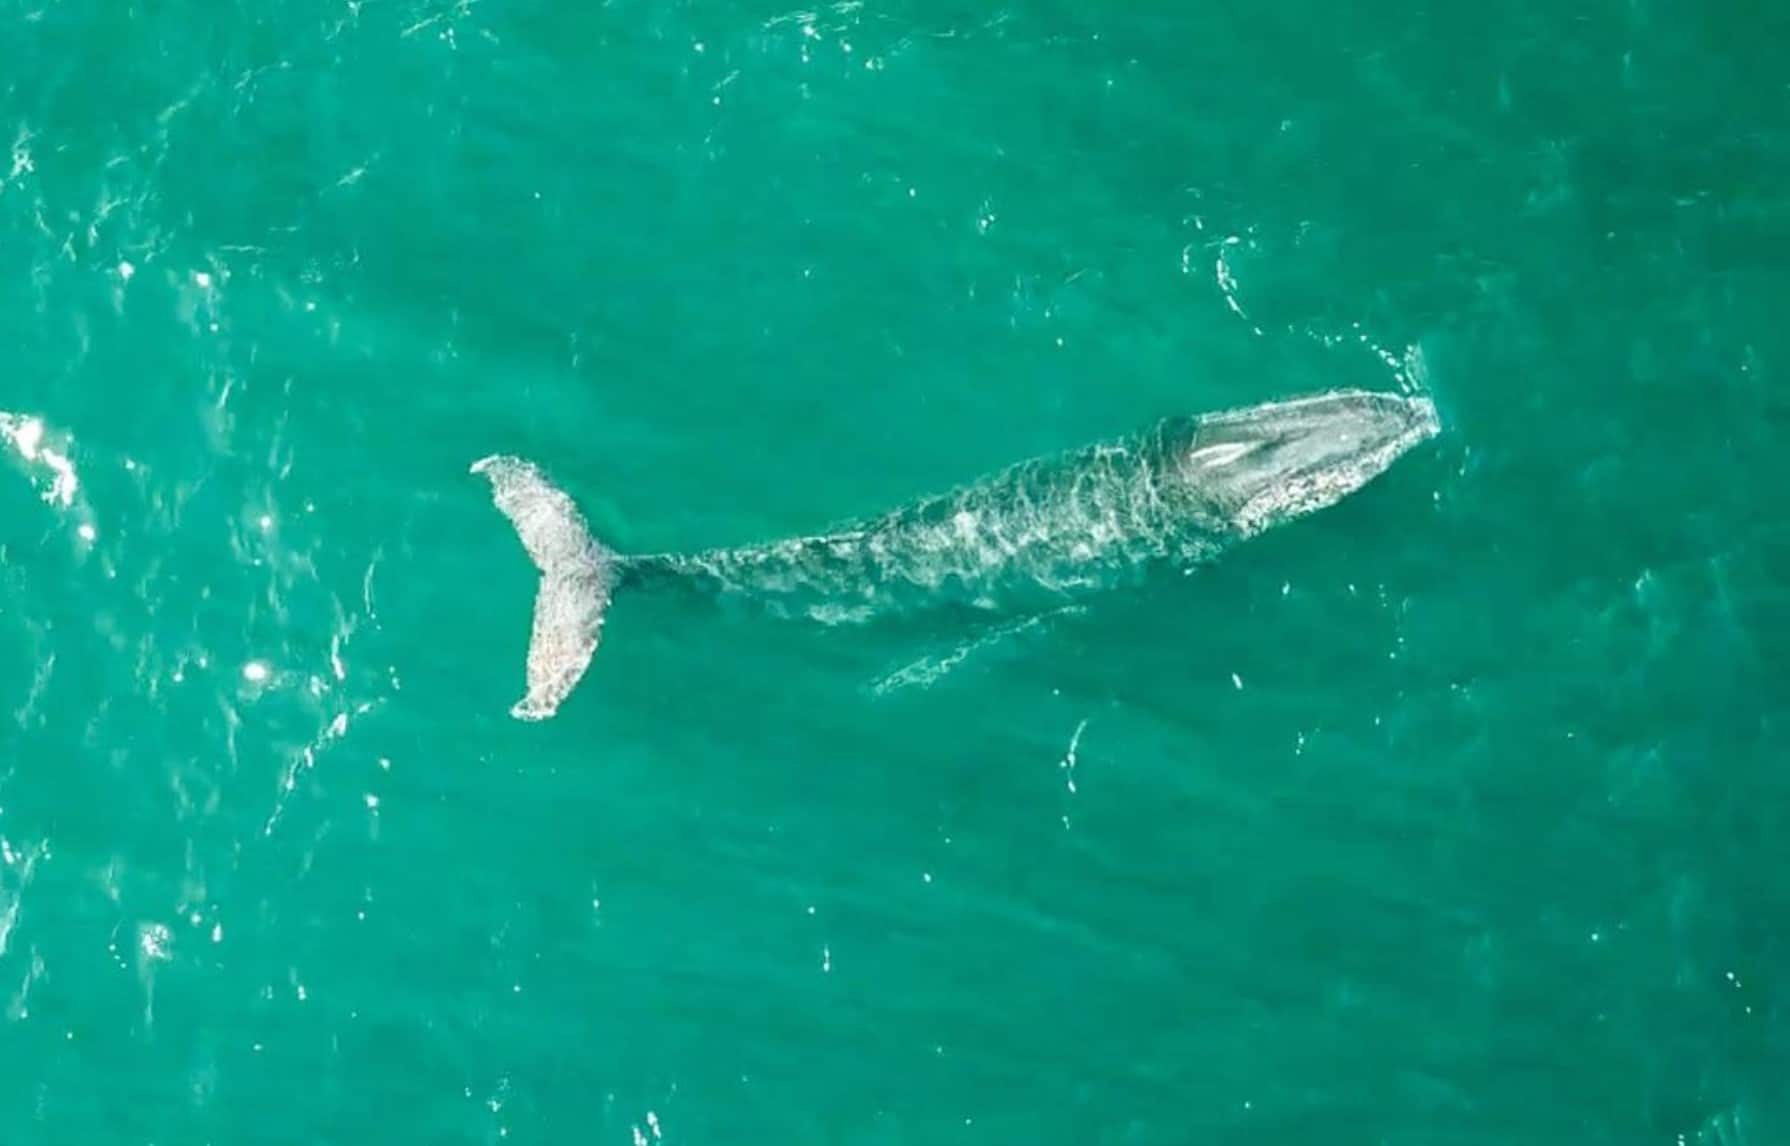 Velryby - velrybí sezóna v Austrálii